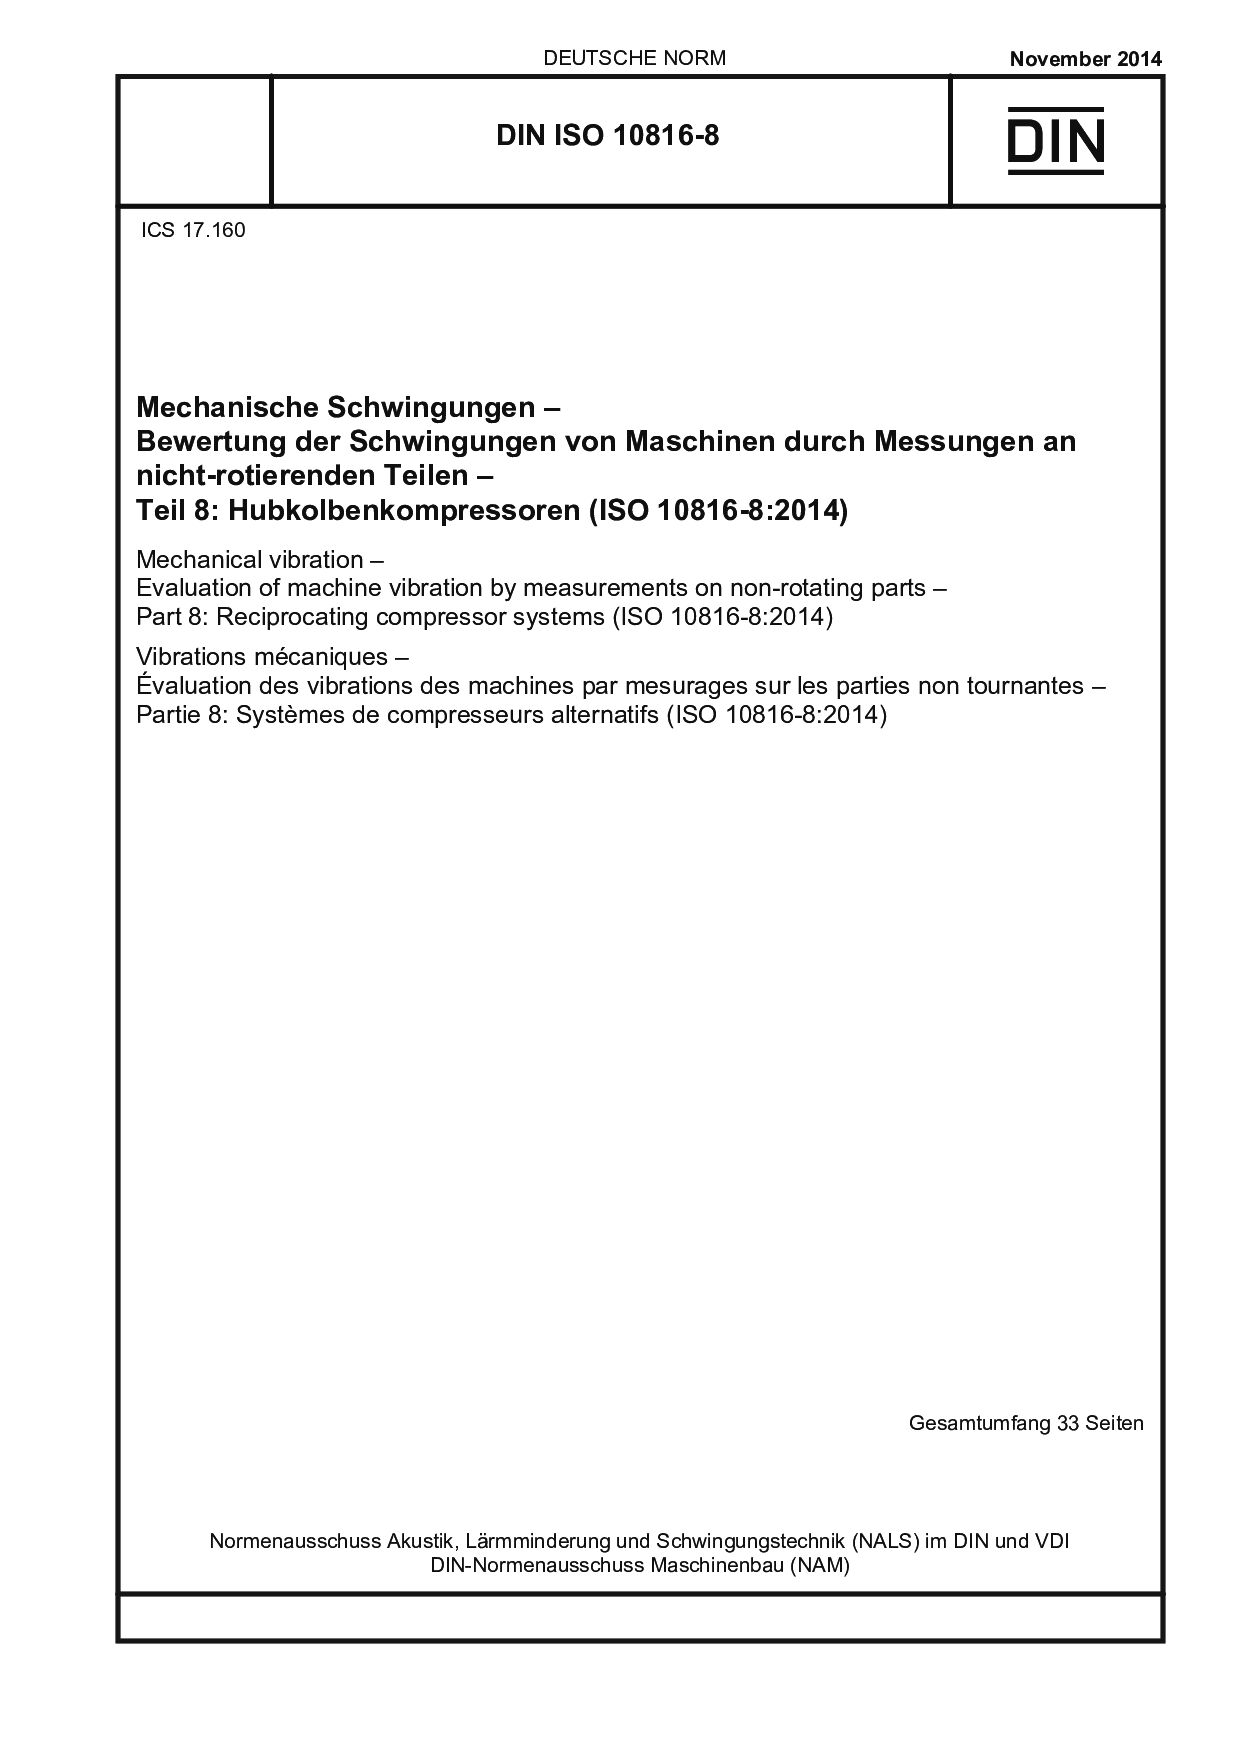 DIN ISO 10816-8:2014封面图